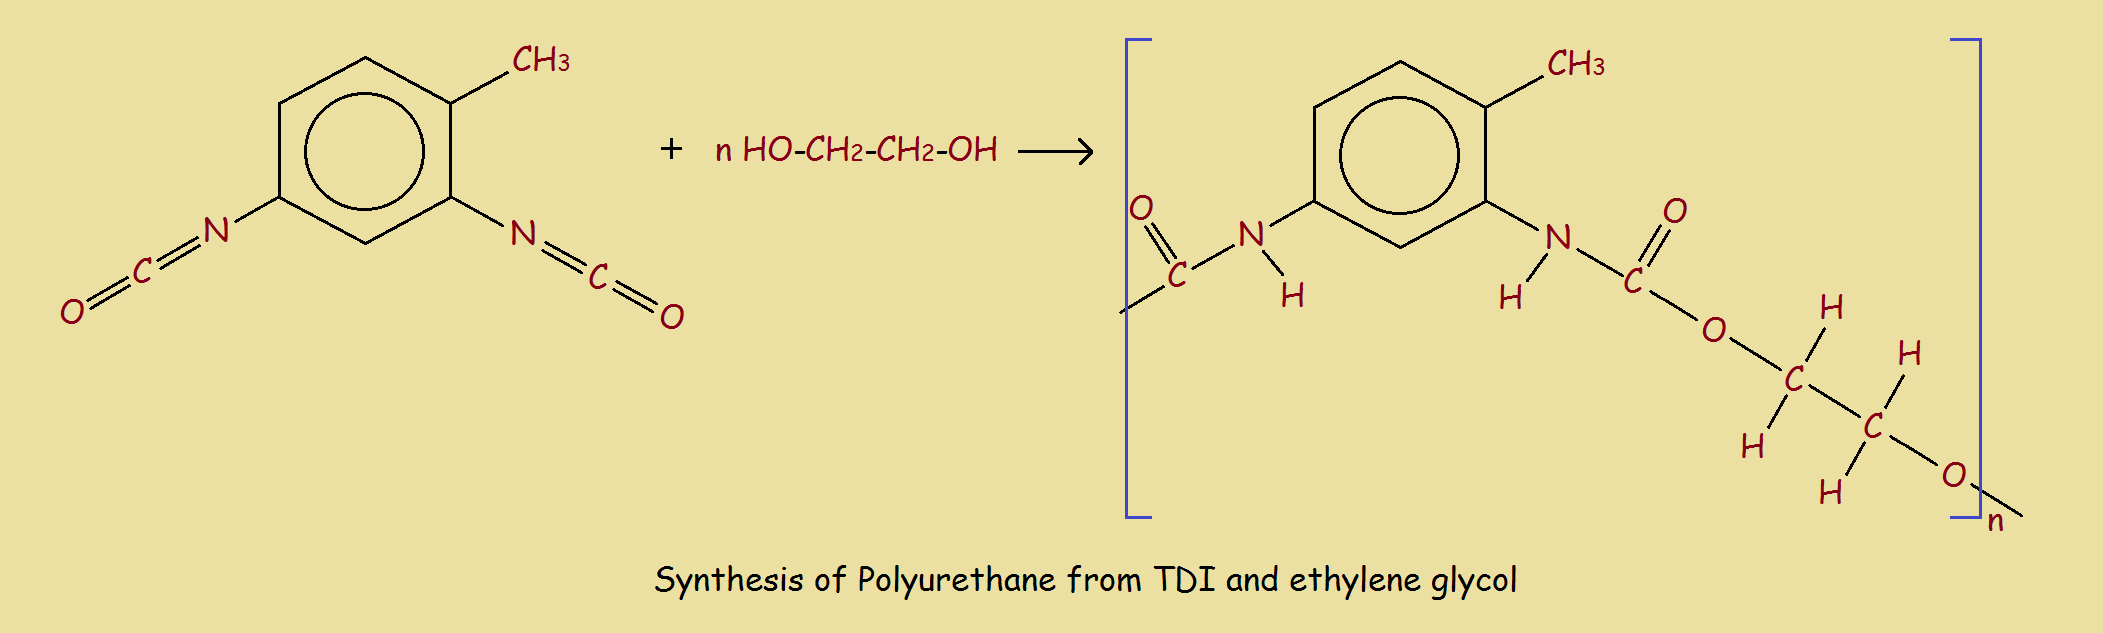 polyurethane